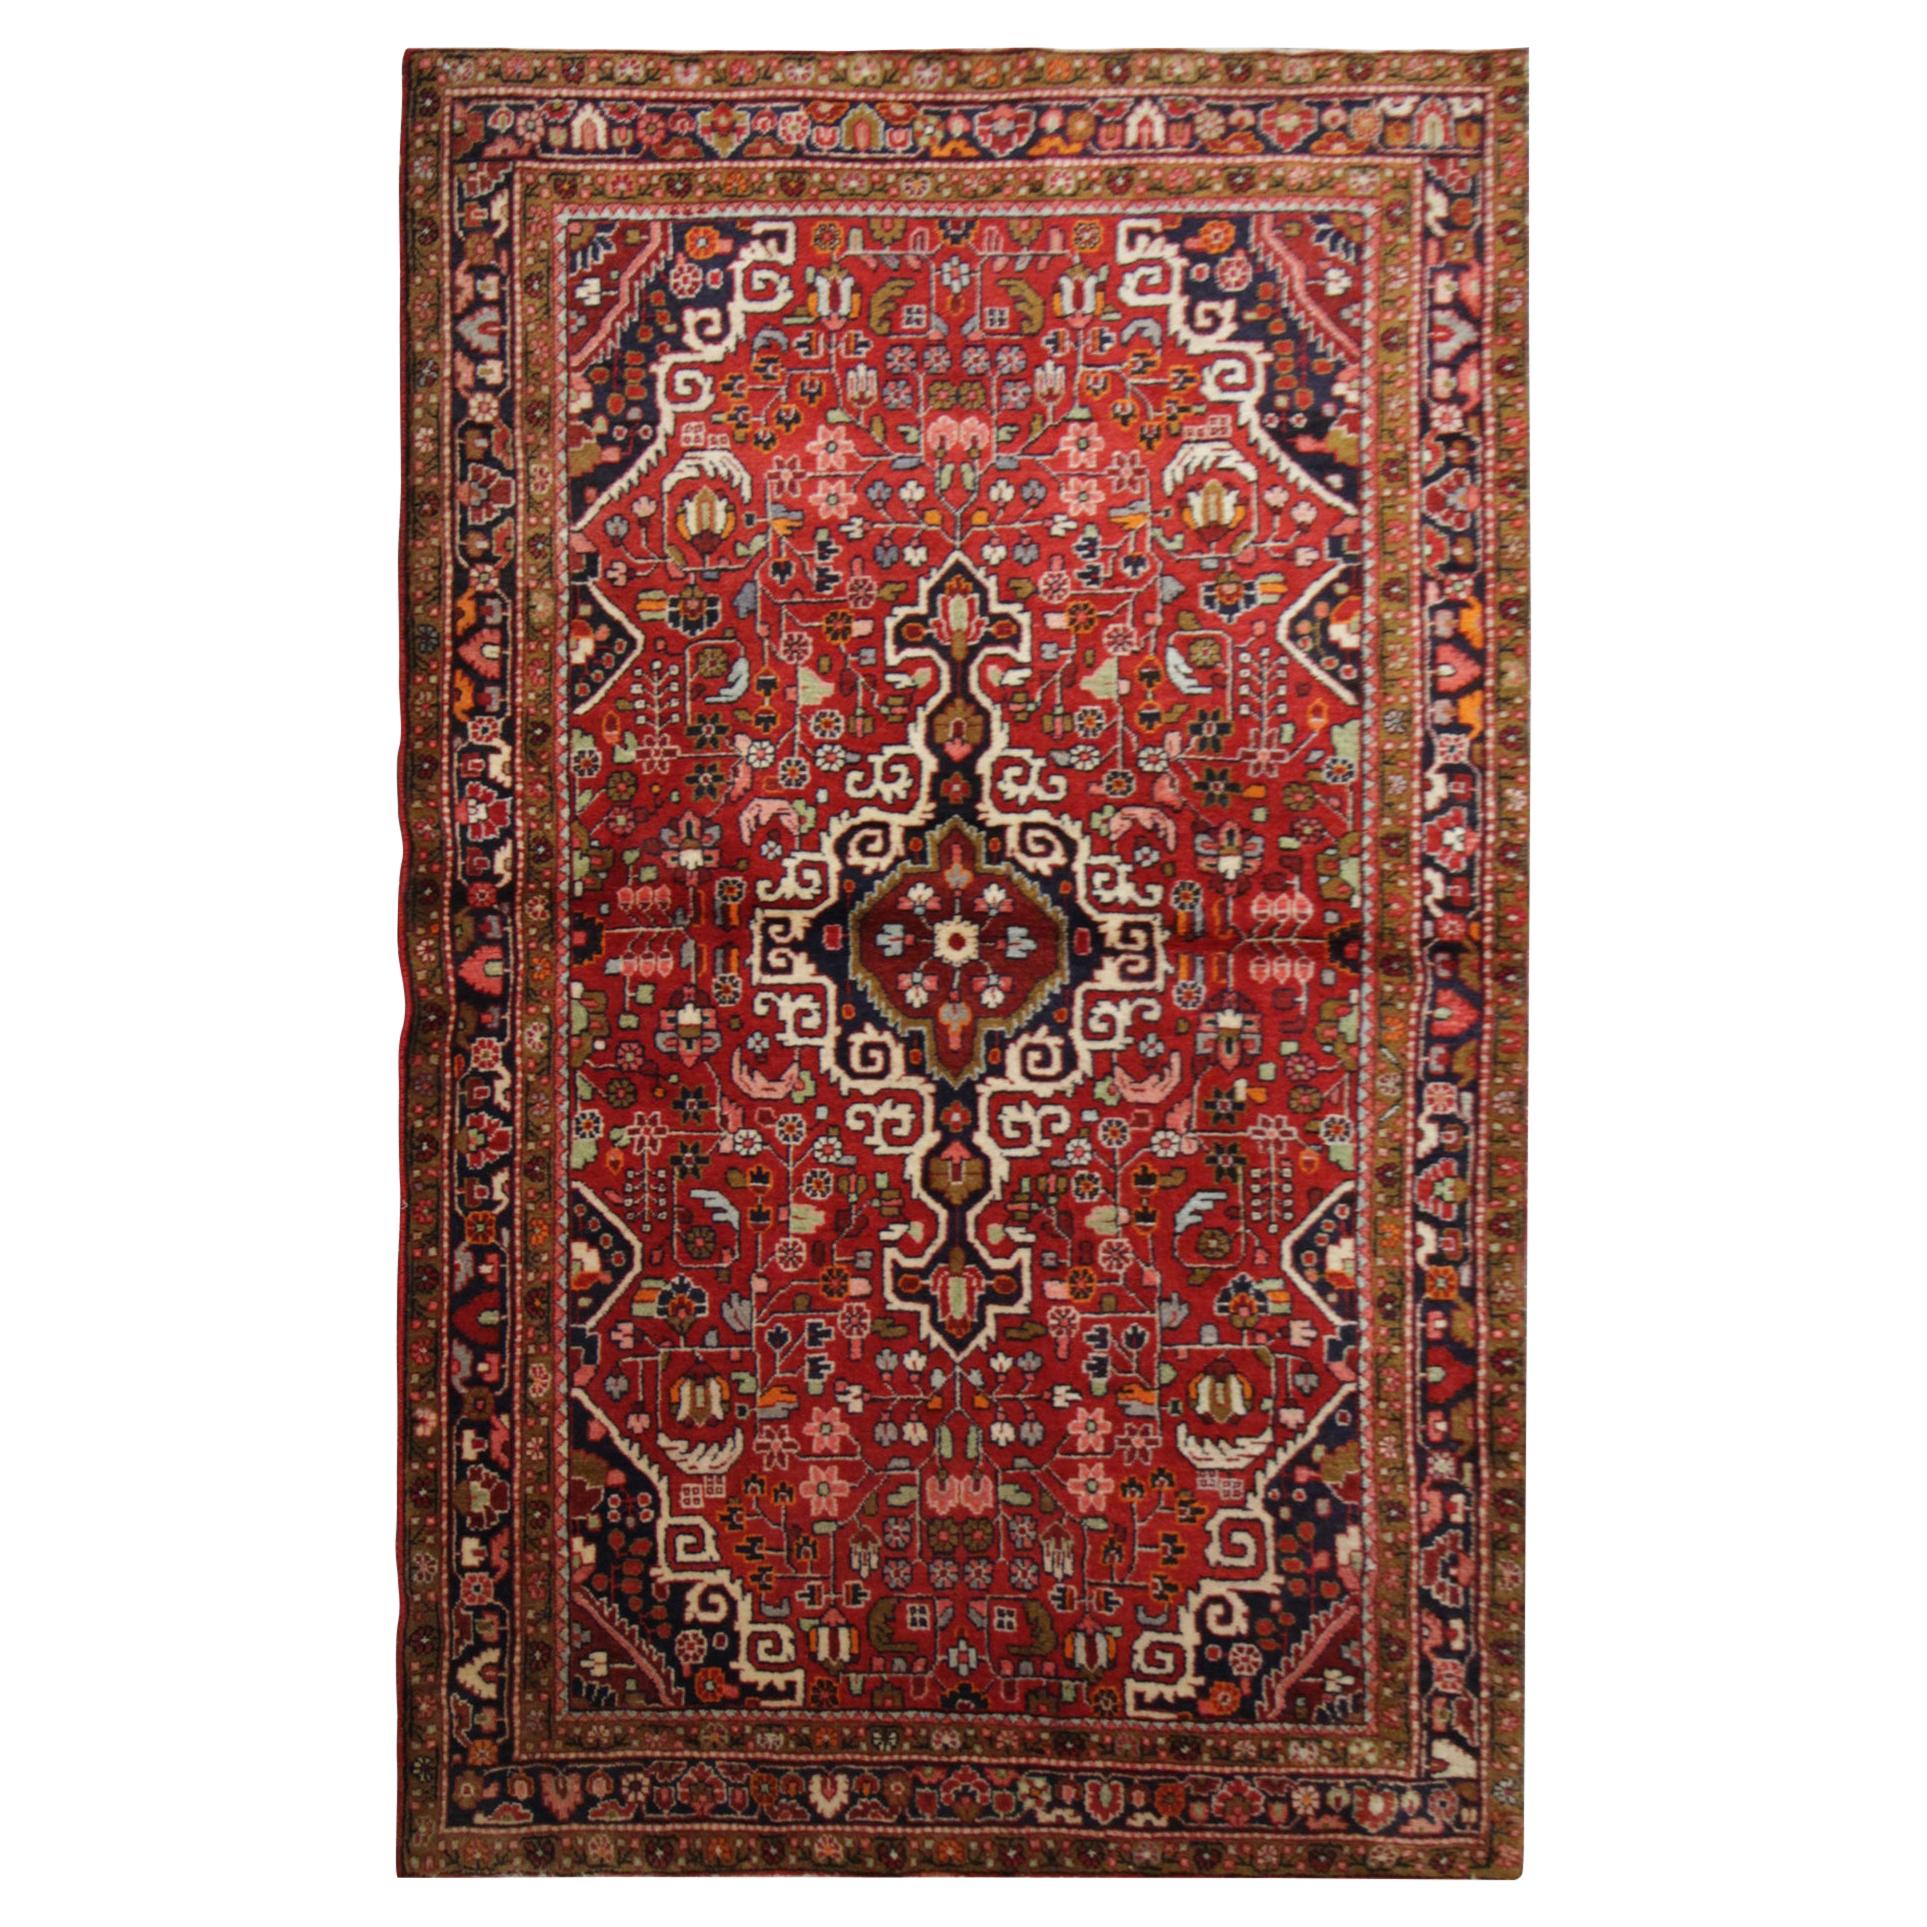 Handgewebter orientalischer Teppich aus roter Wolle, traditioneller Stammeskunst, 127 x 214 